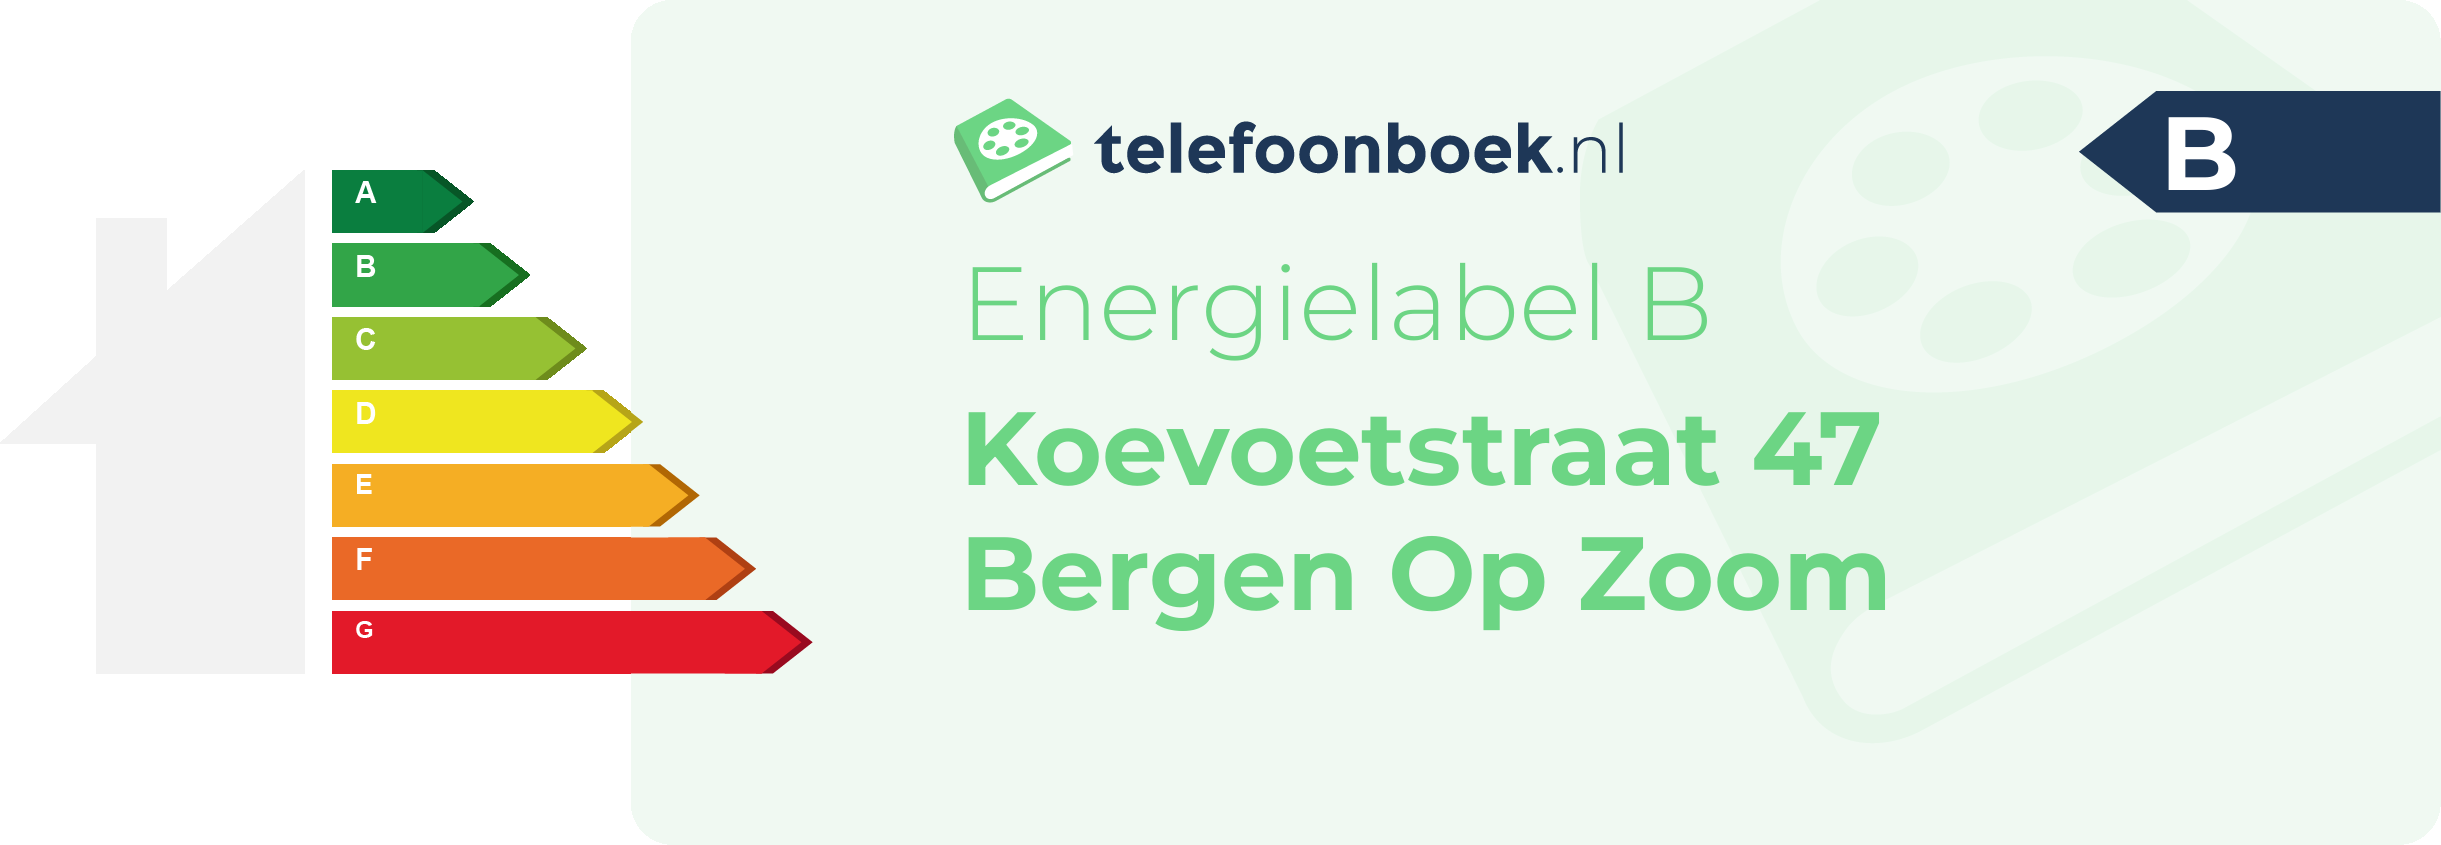 Energielabel Koevoetstraat 47 Bergen Op Zoom